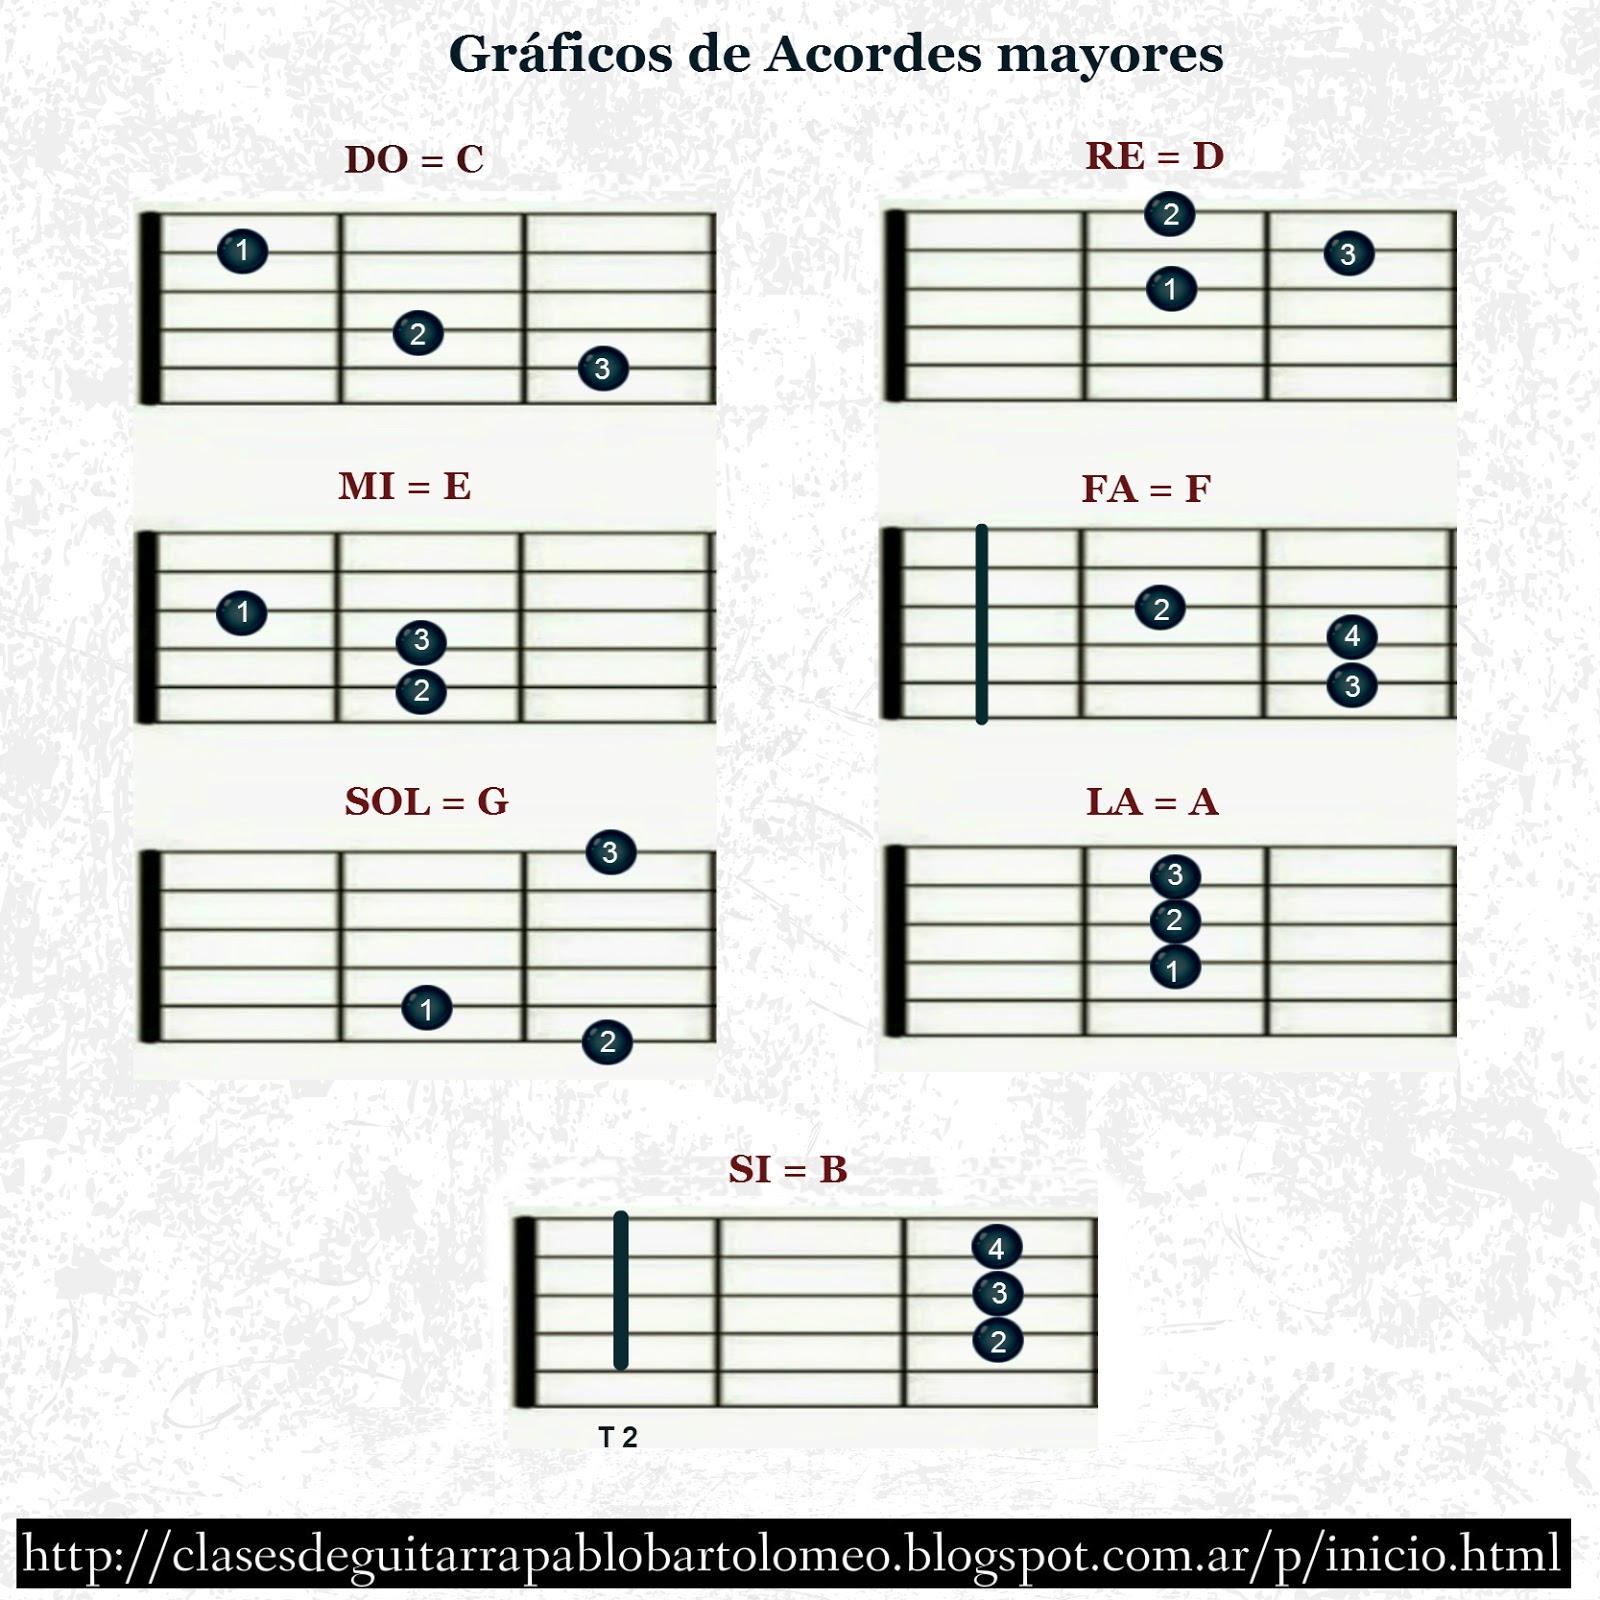 Clases De Guitarra Pablo Bartolomeo Gr Ficos De Acordes Mayores 2268 ...